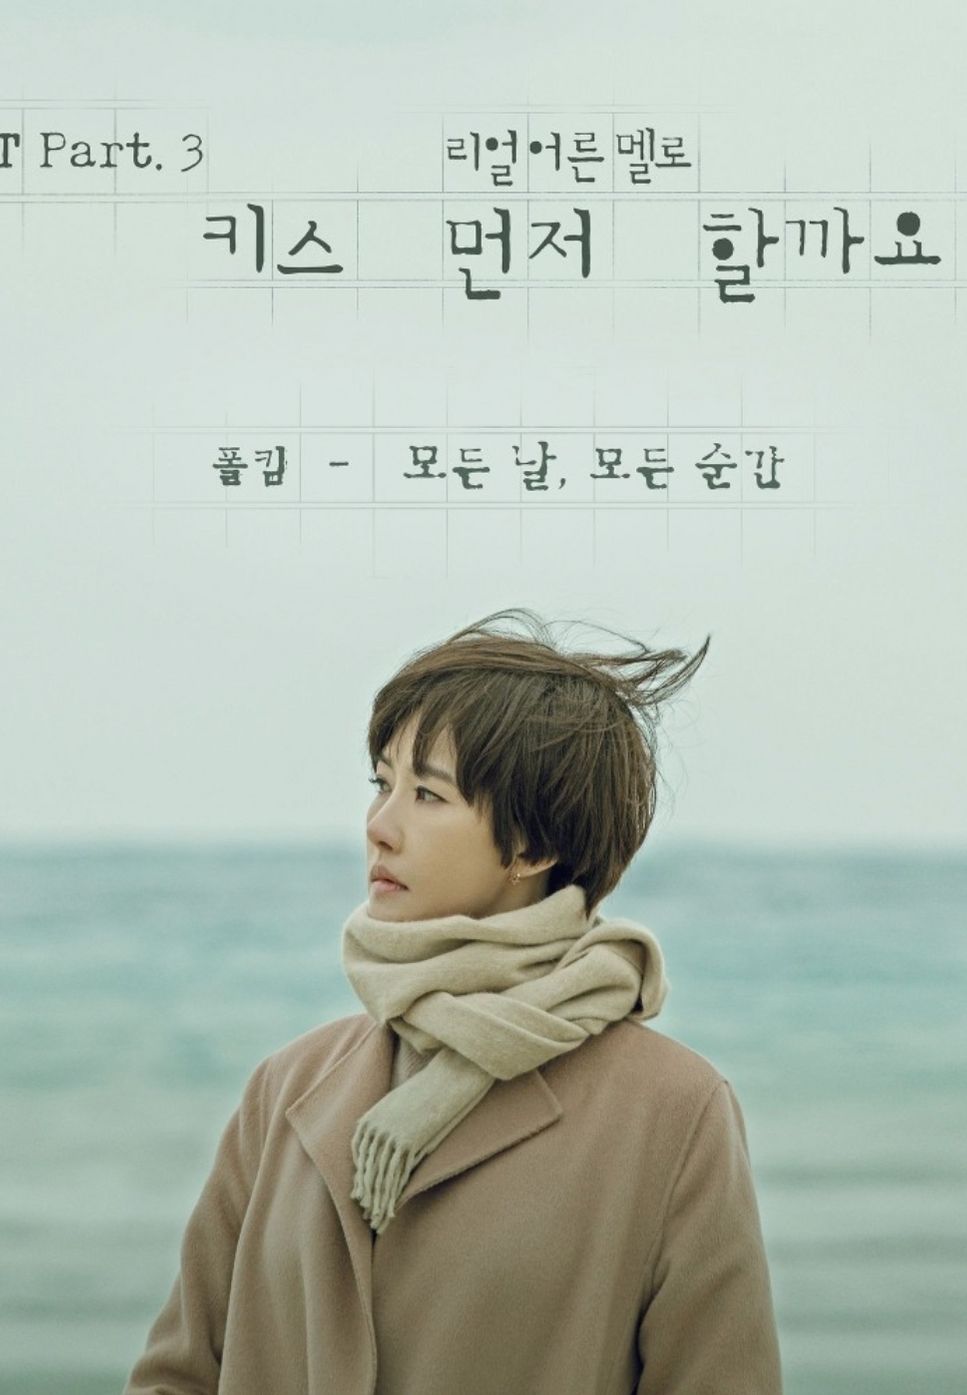 폴킴 (Paul Kim) - 모든 날, 모든 순간 (Every day, Every Moment) (Includes Gkey) by PIANOSUMM